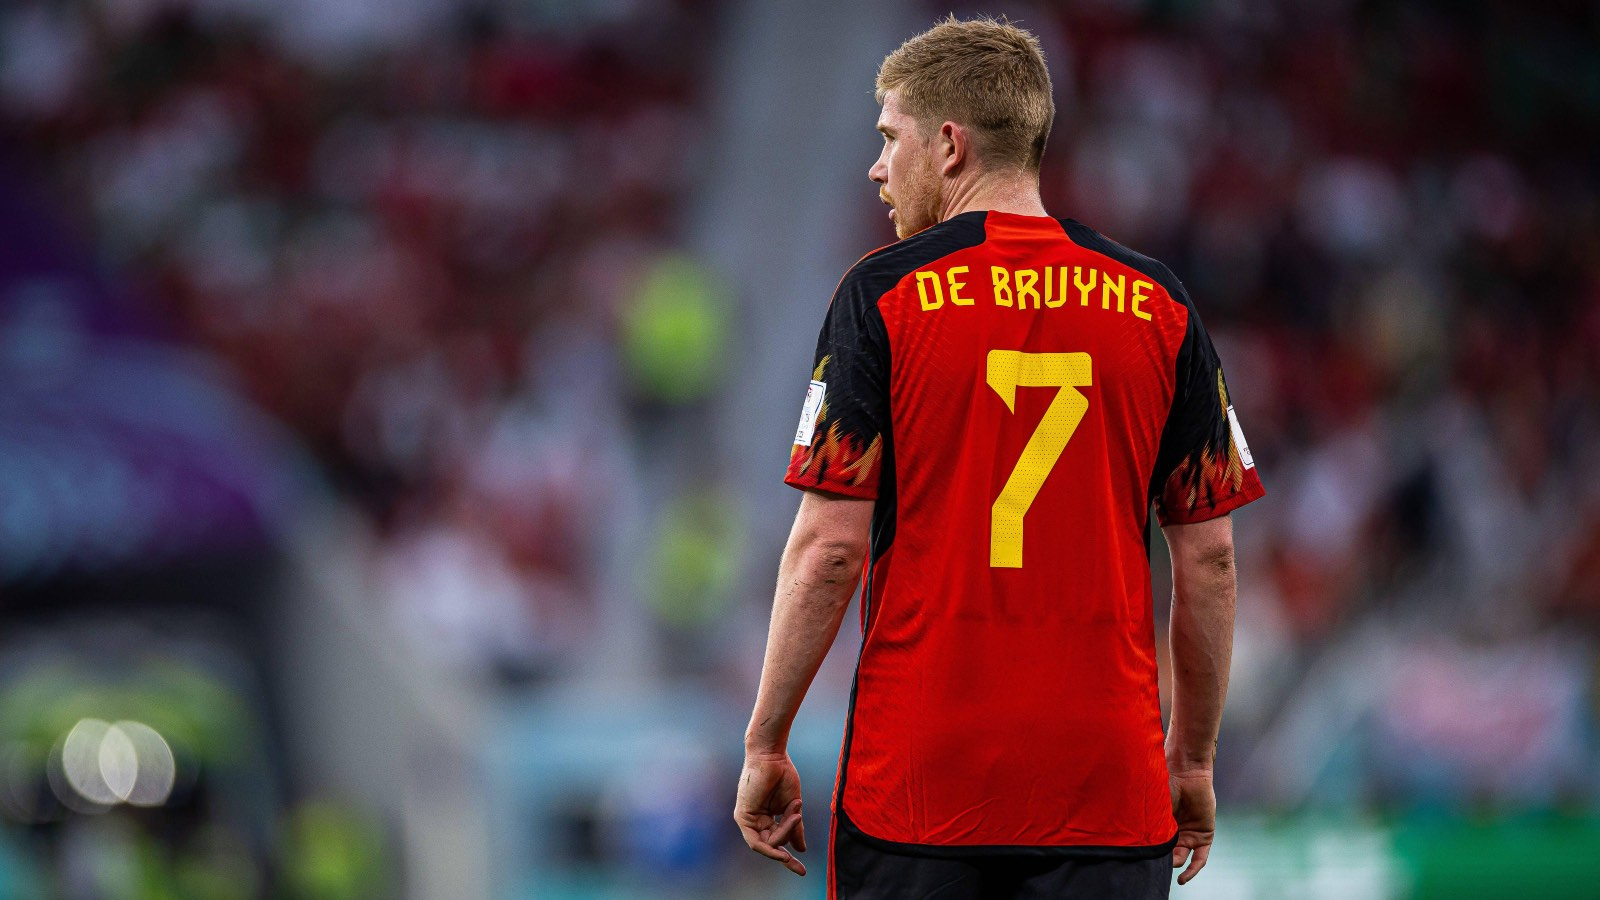 4 là điểm số mà De Bruyne đạt được sau trận đấu 